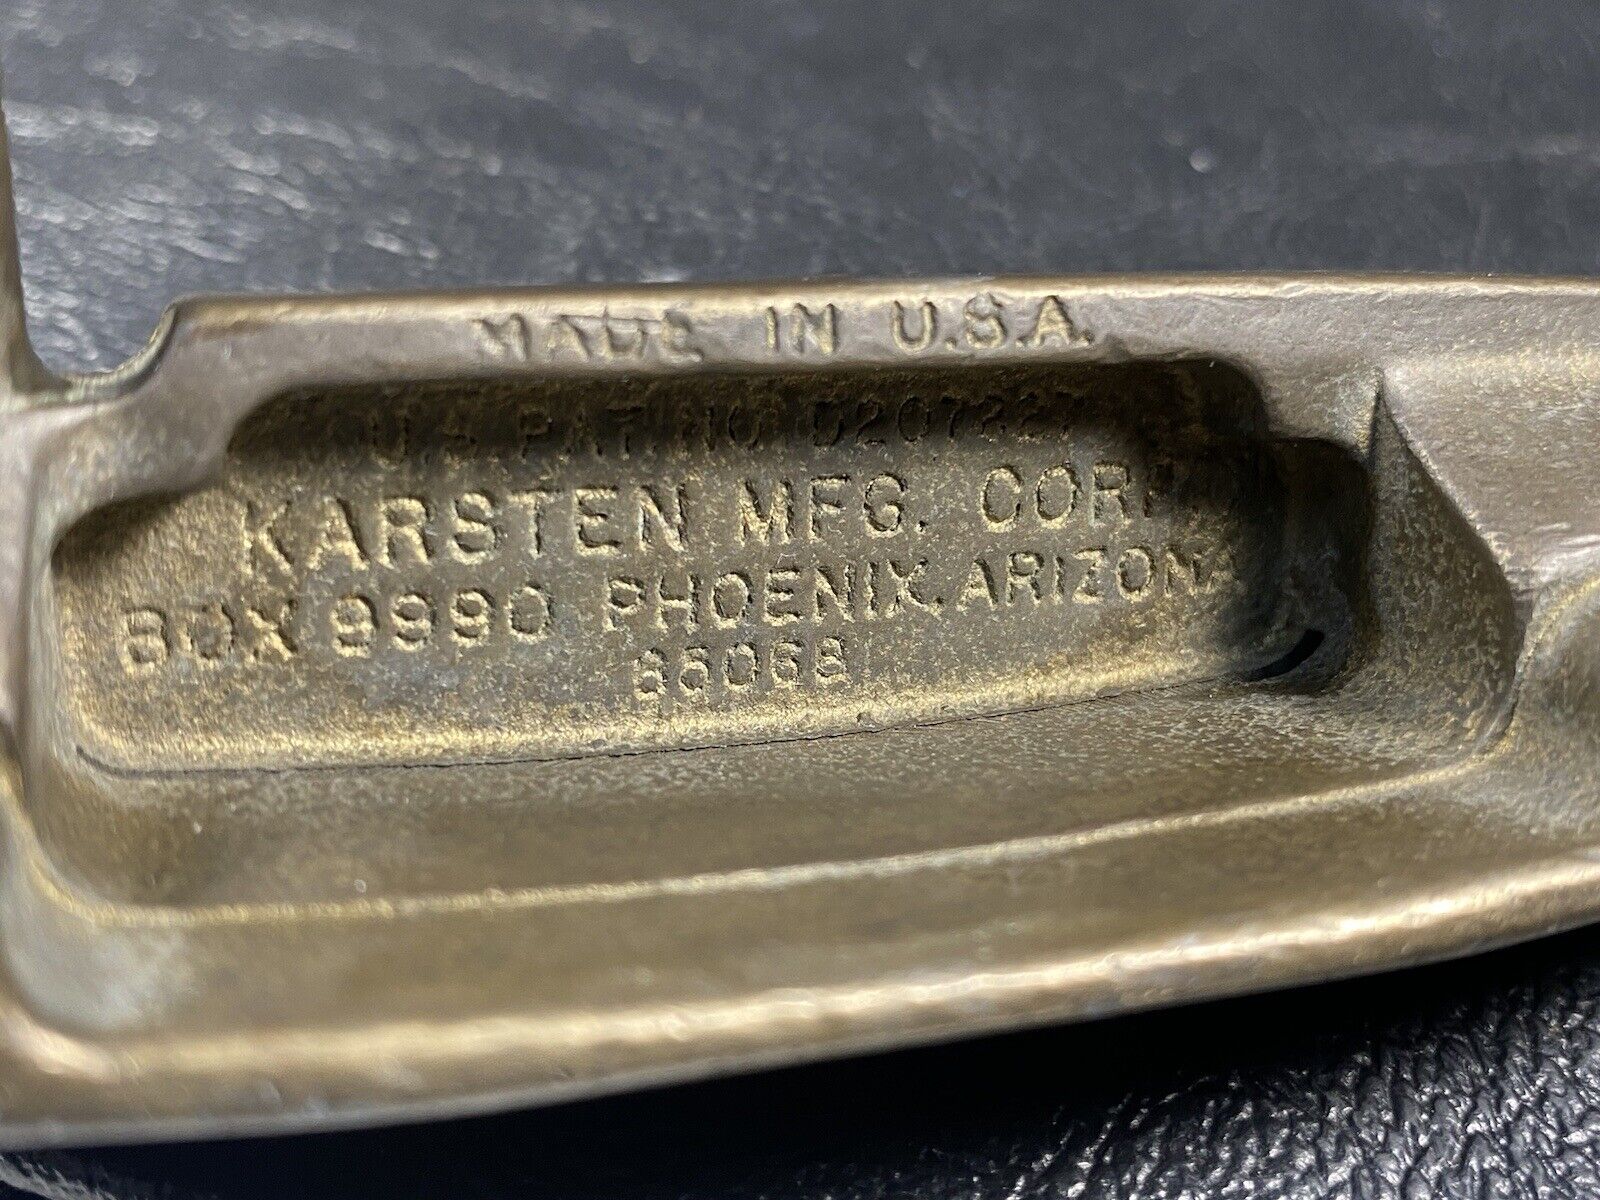 Karsten PING ANSER PUTTER 36” RH Phoenix AZ 85020 MADE IN USA Original Grip